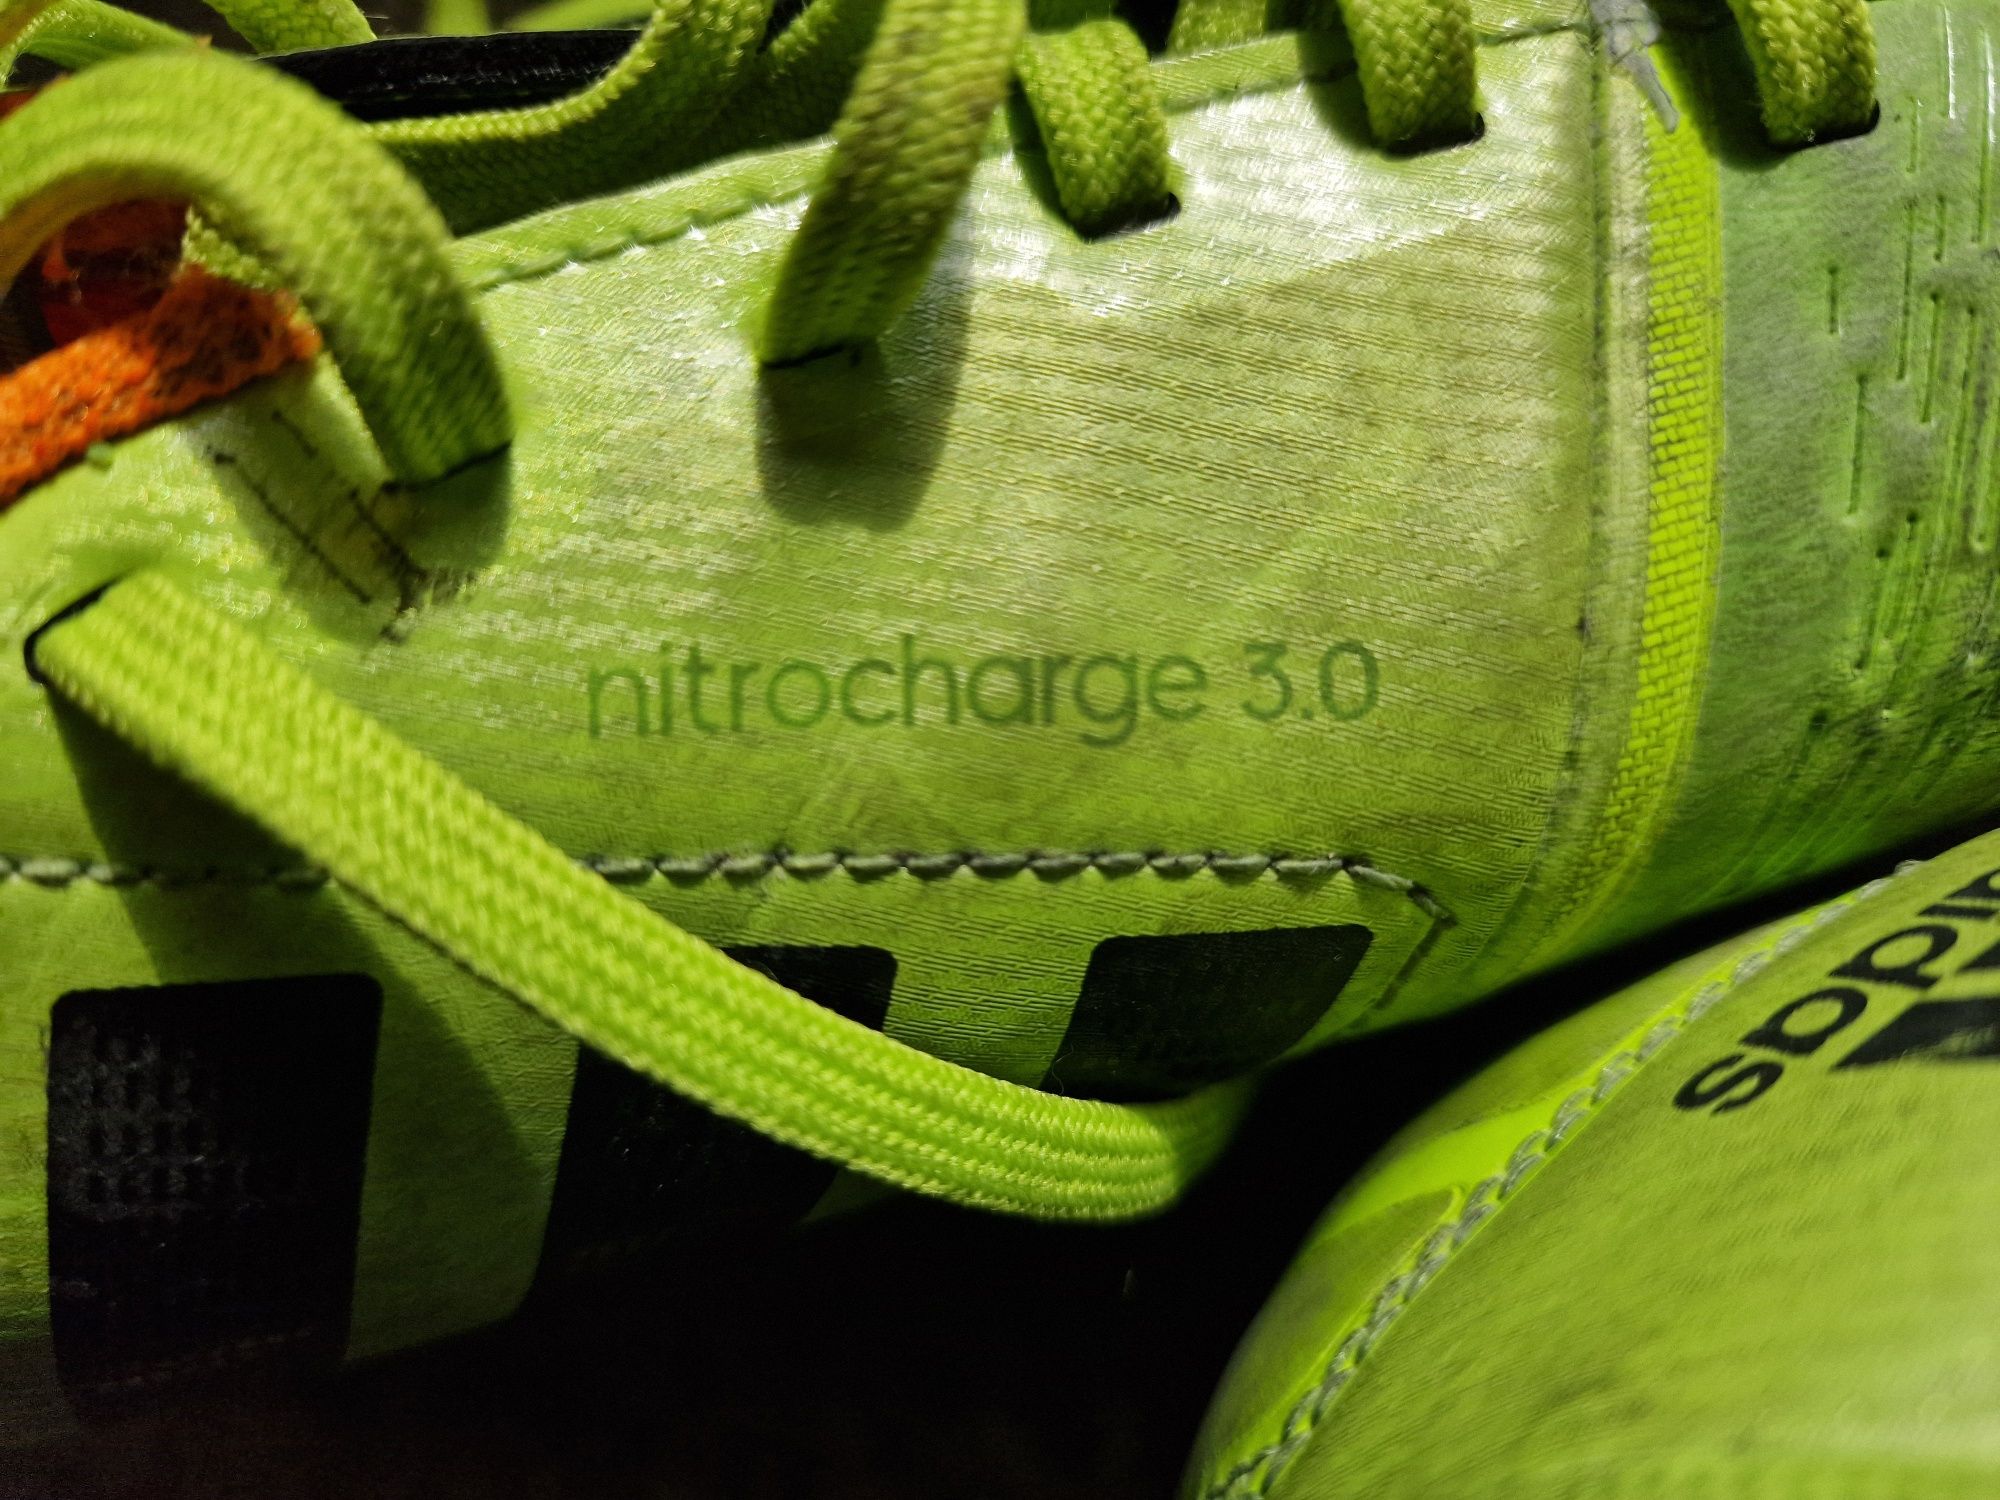 Buty piłkarskie turfy Adidas nitrocharge 3.0